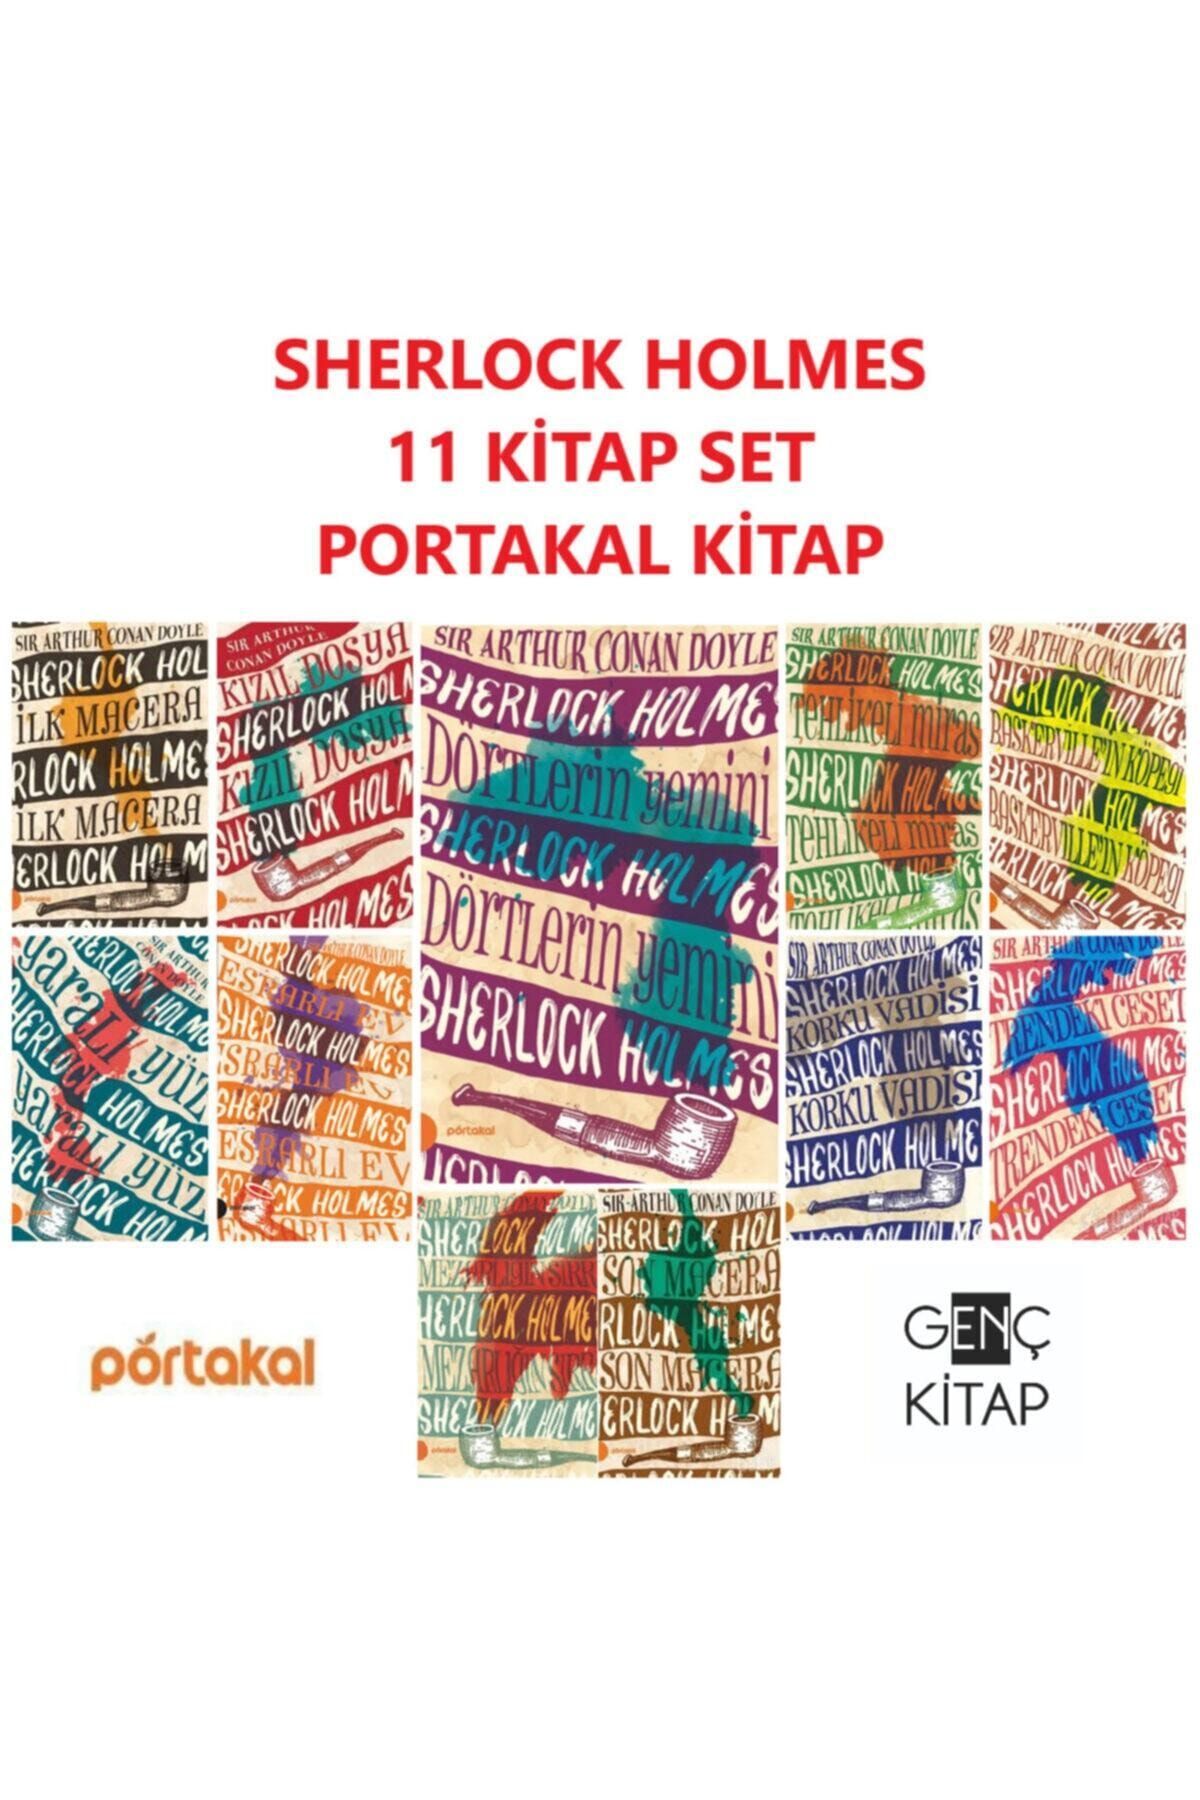 Portakal Kitap Sherlock Holmes 11 Kitap Set Sır Arthur Conan Doyle-ilk Macera-son Macera-kızıl Dosya-dörtlerin